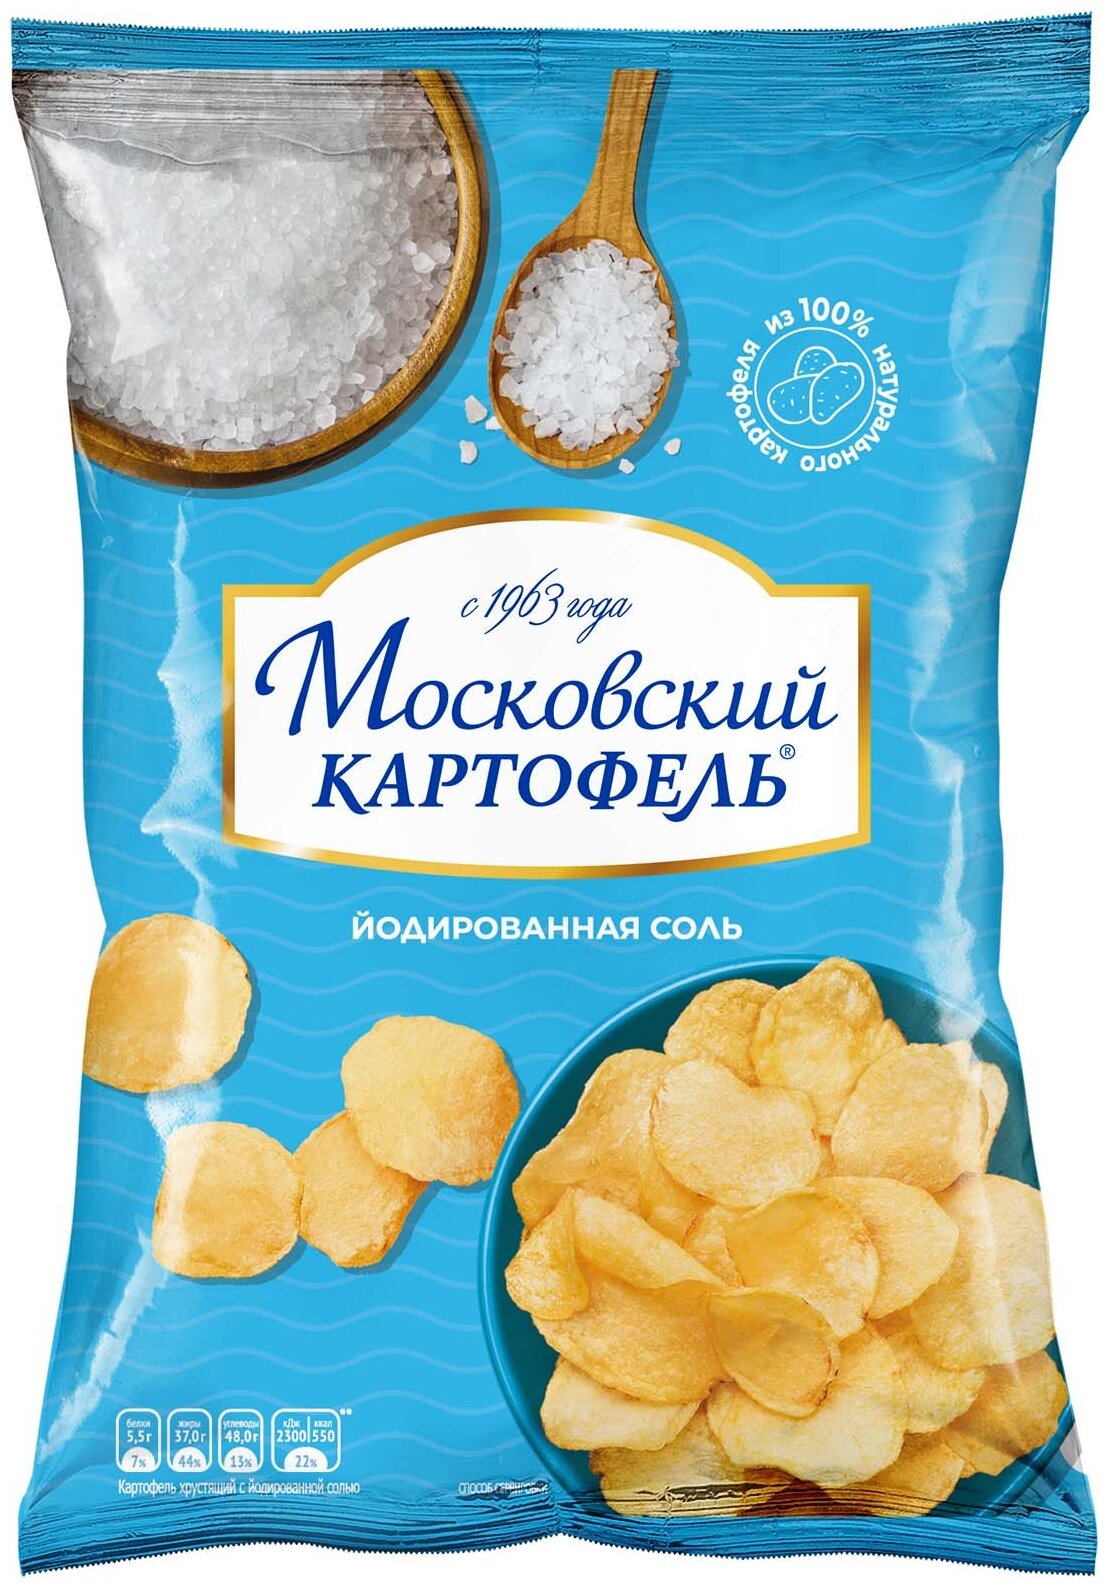 Картофель хрустящий "Московский картофель" с йодированной солью 70г